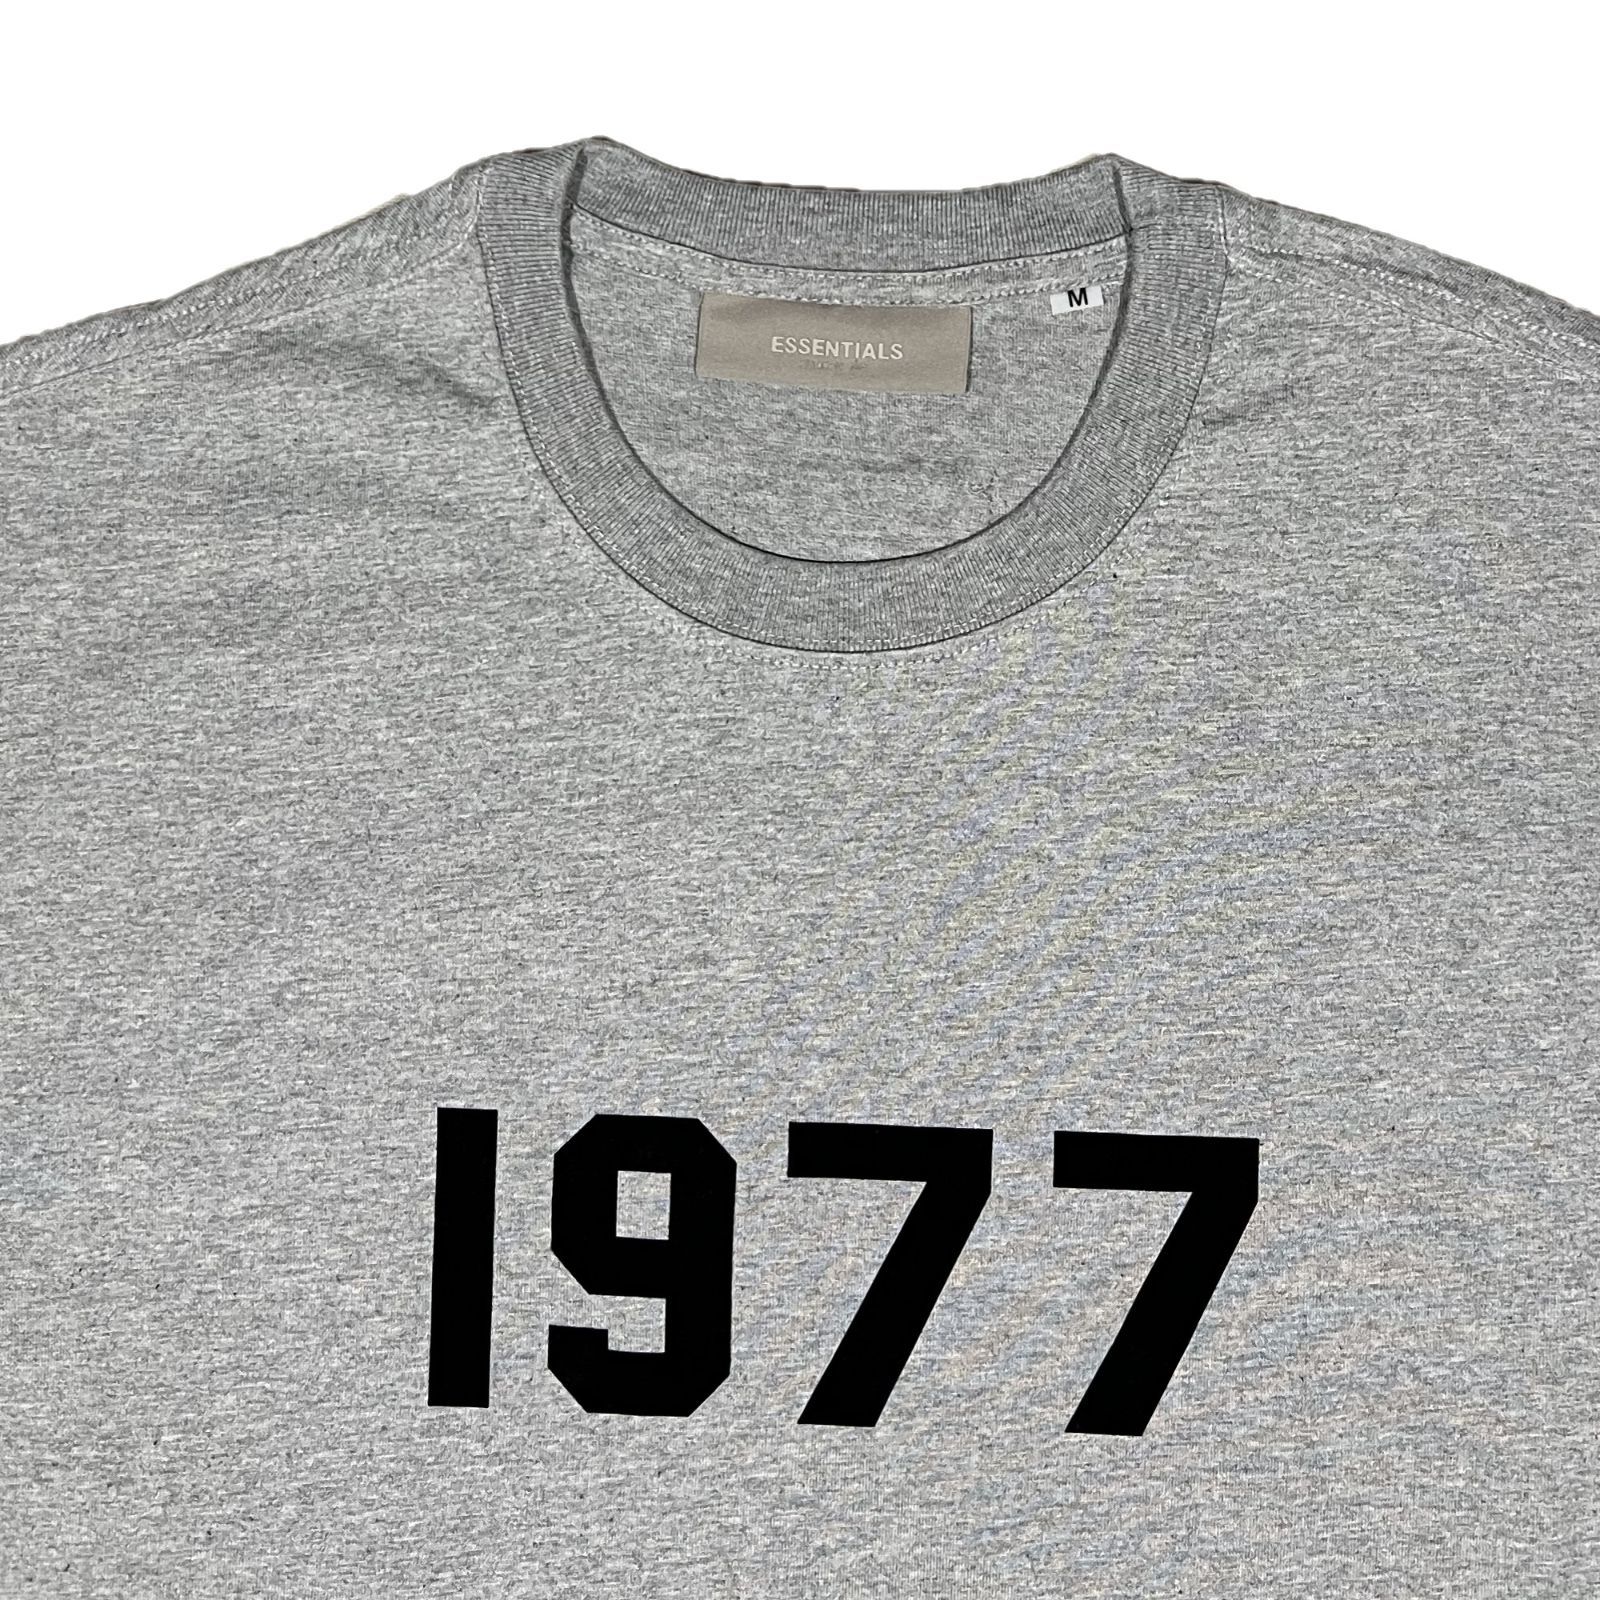 FOG エッセンシャルズ 1977ロゴ 半袖 Tシャツ グレー M www ...